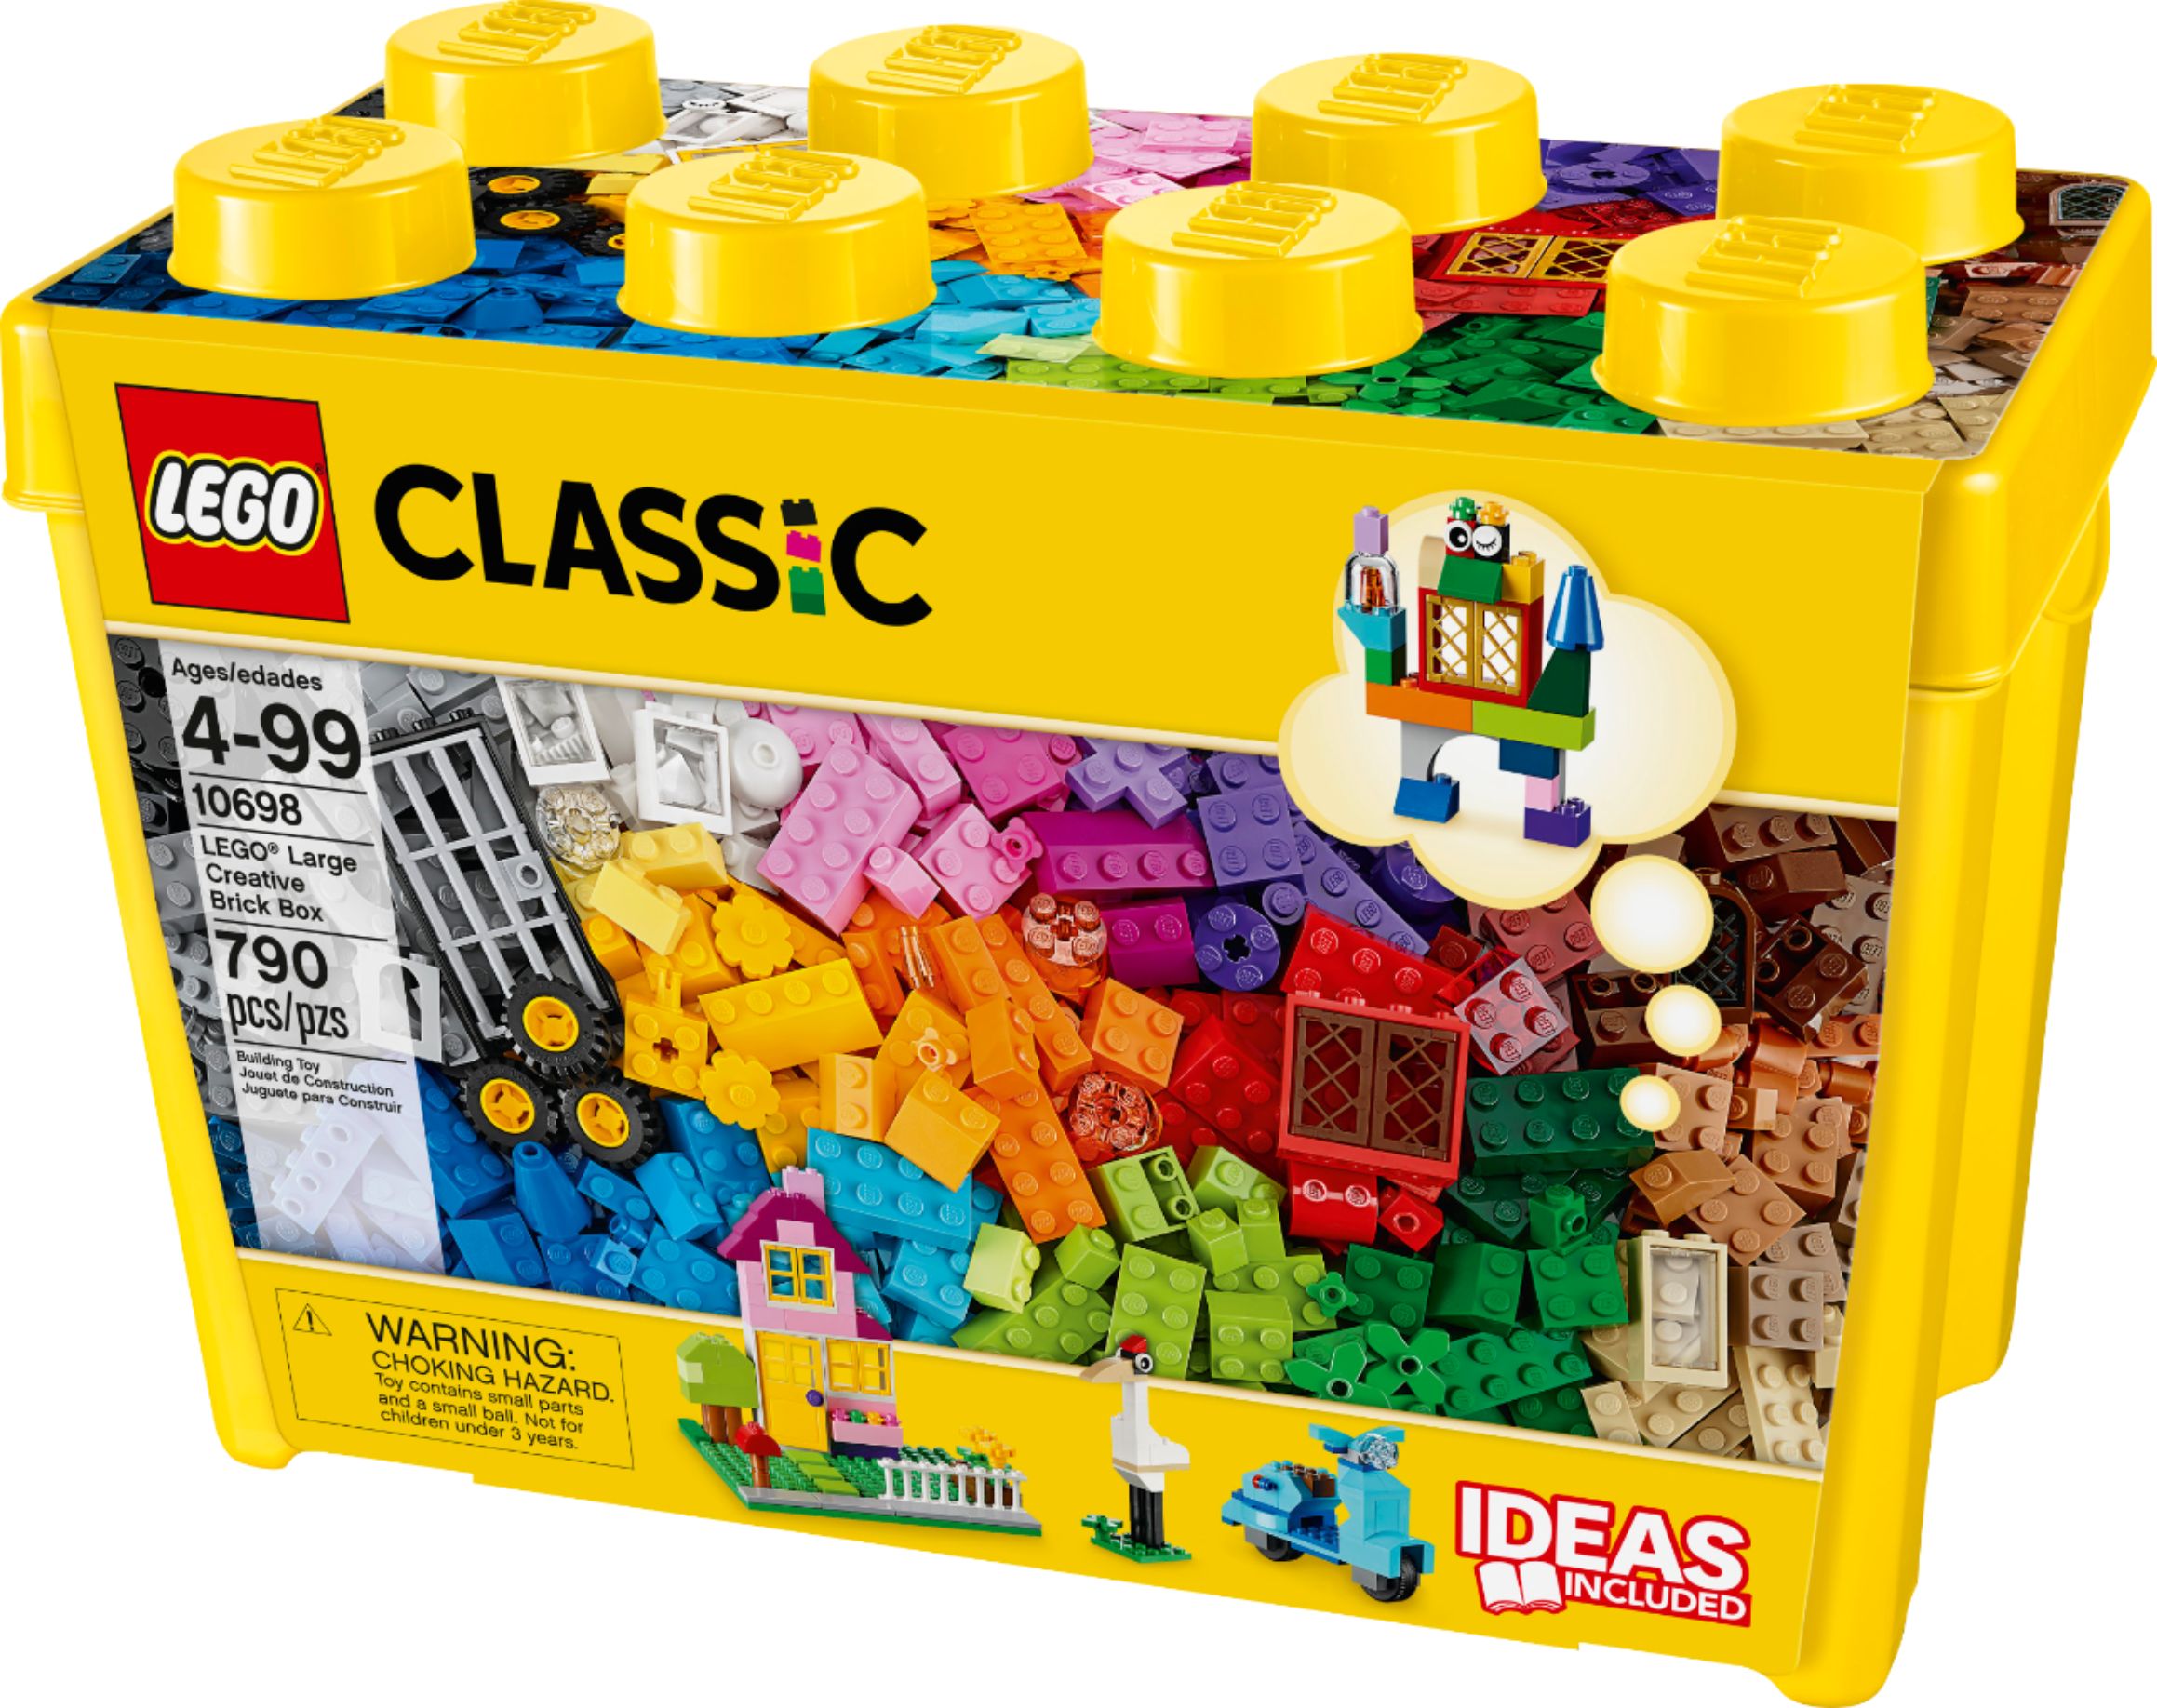 Lego box set.